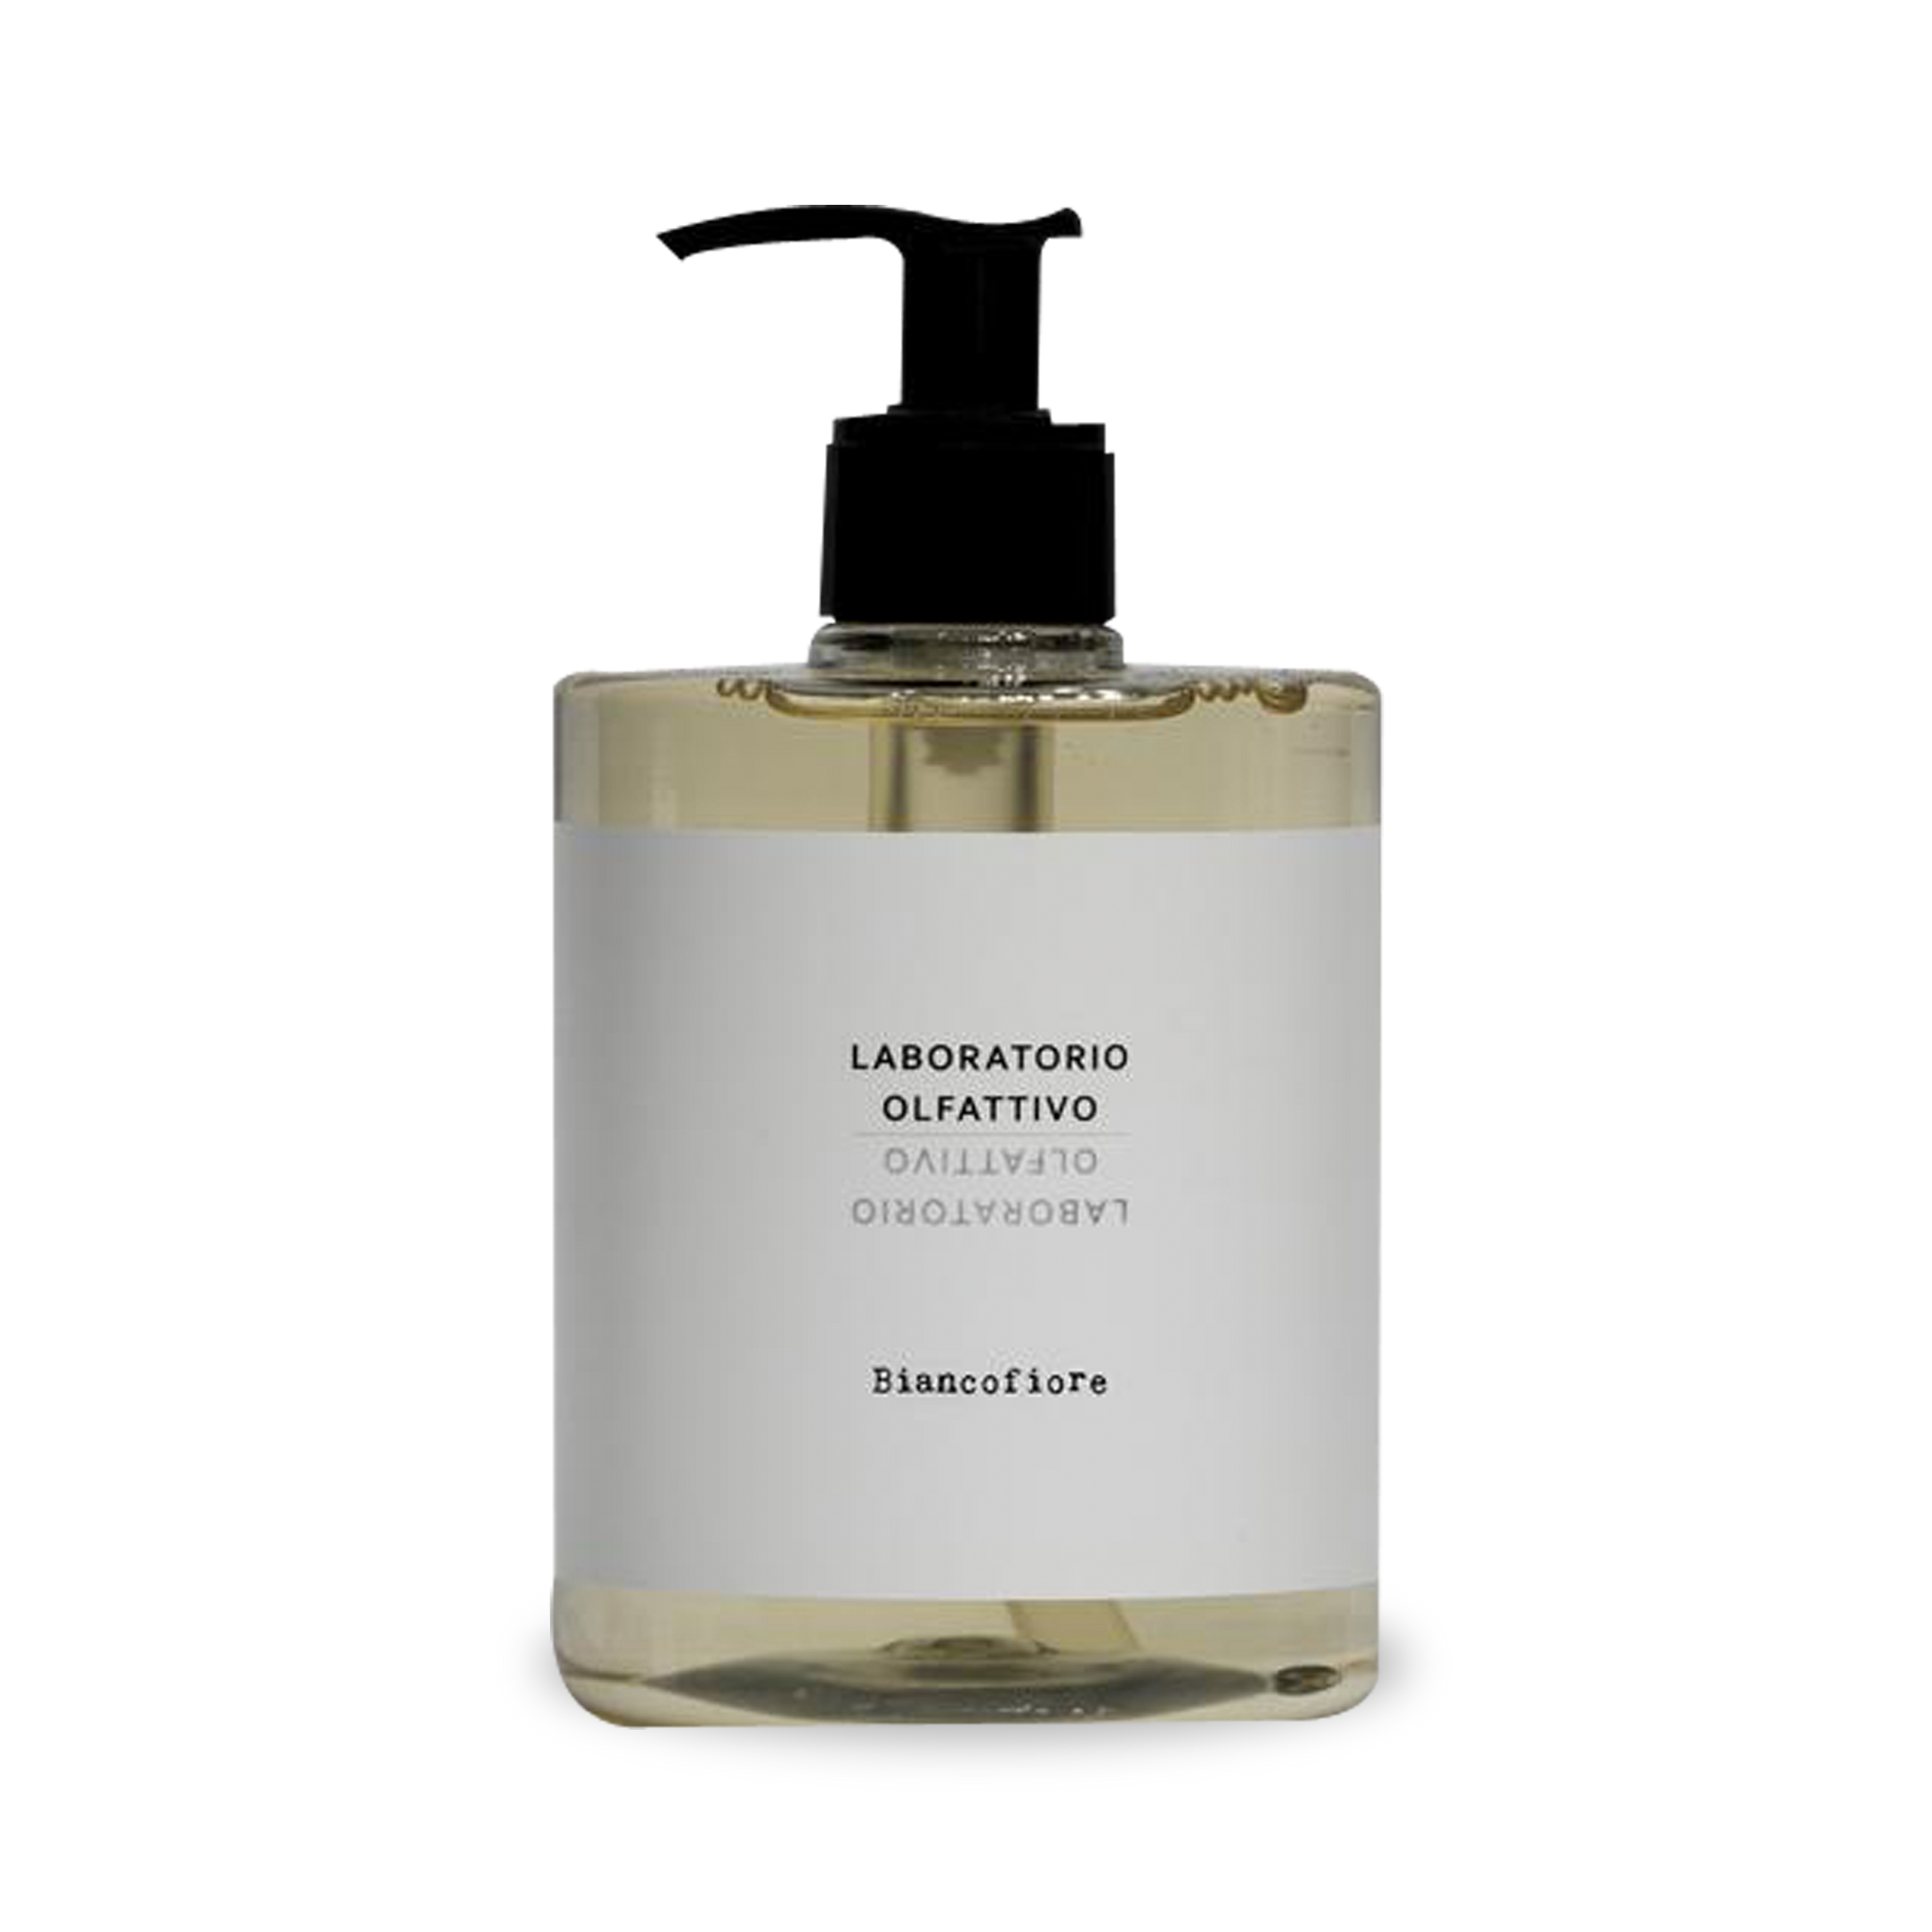 Laboratorio Olfattivo was born from a love for niche perfumes.